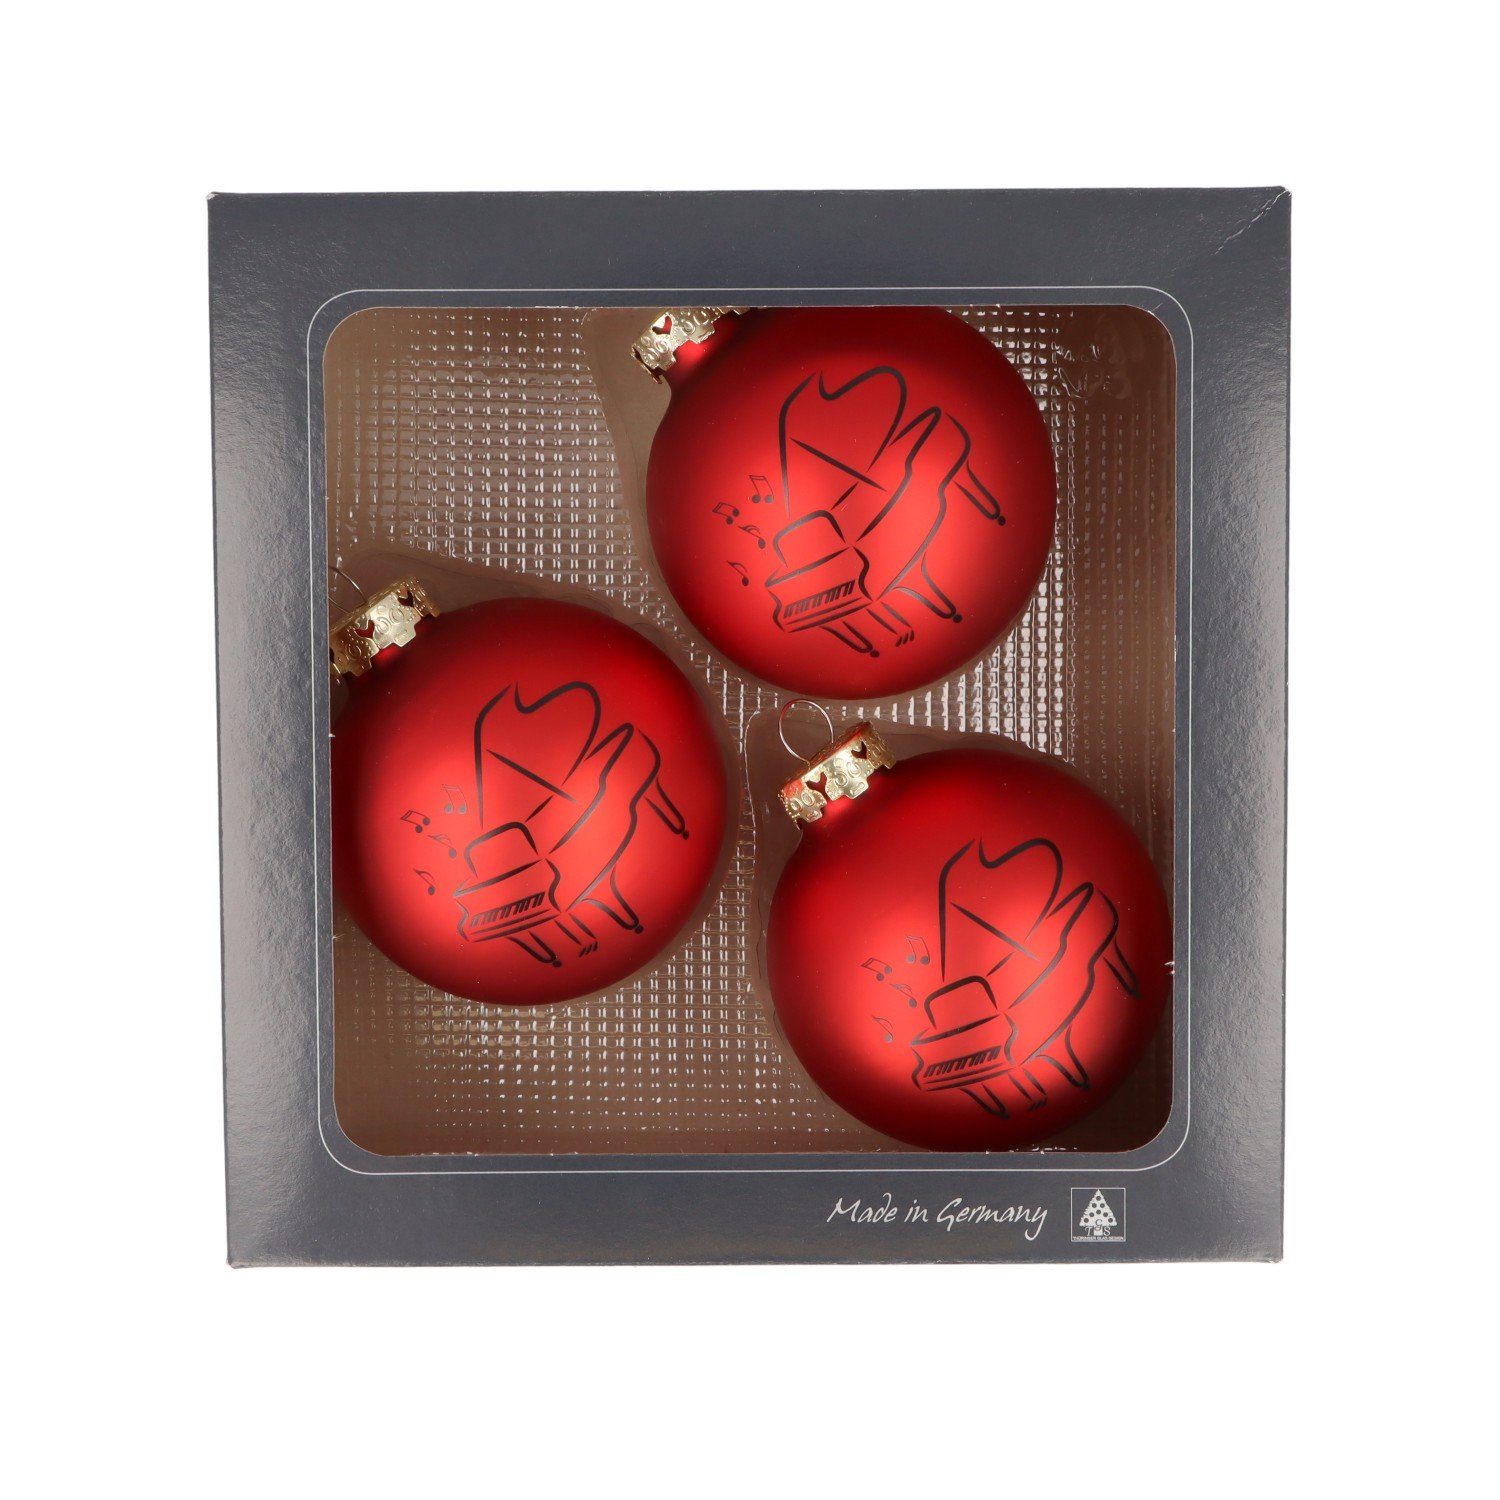 Musikboutique Weihnachtsbaumkugel, 3er-Set aus Glas mit schwarzem Piano-Druck, Farbe rot